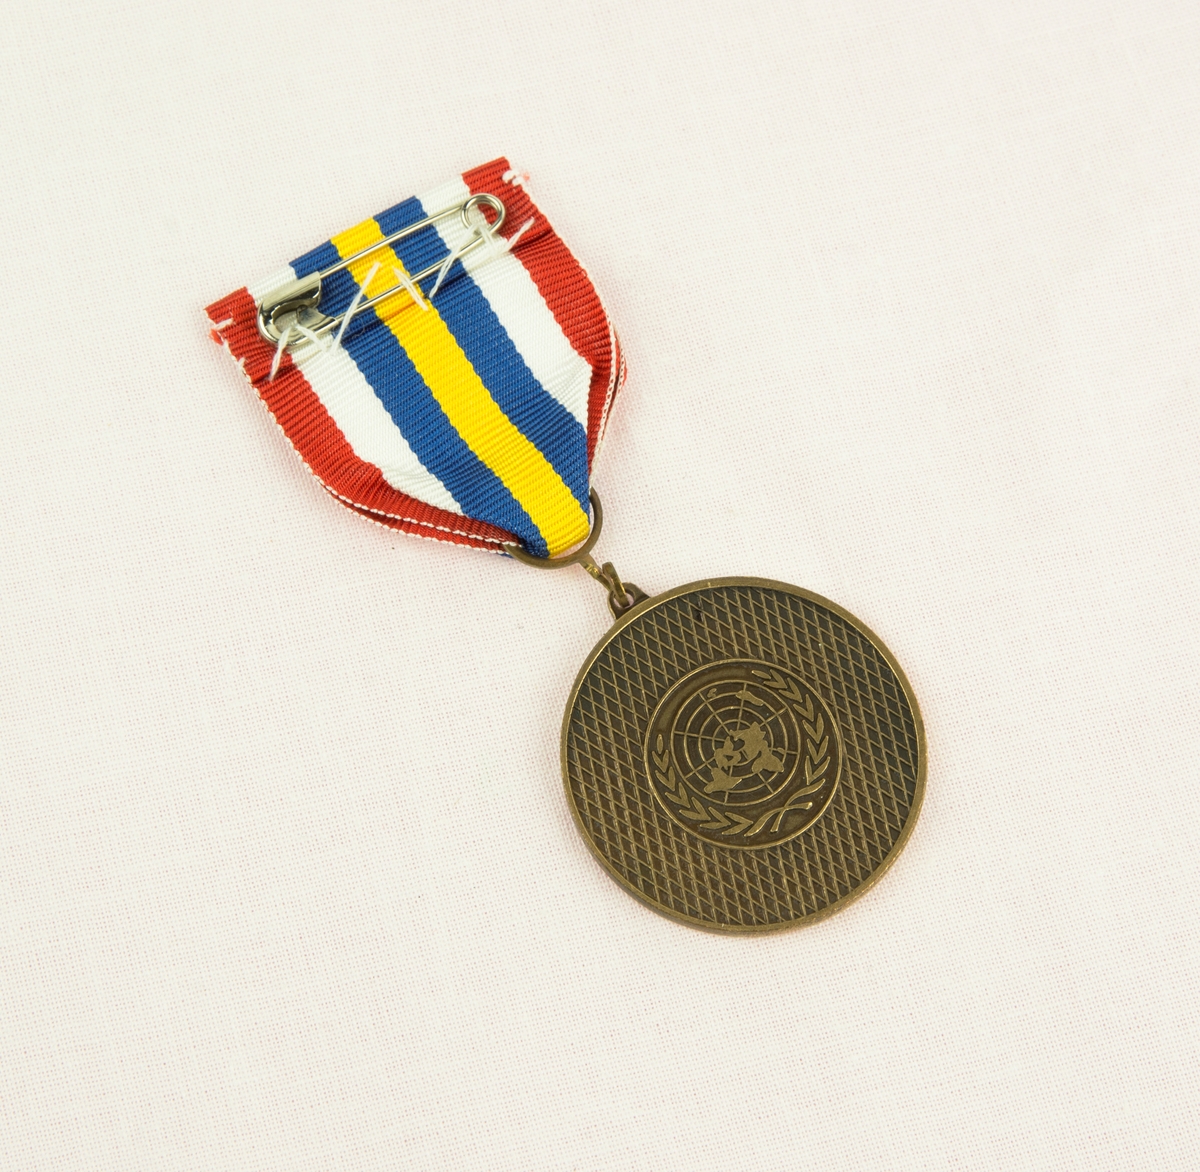 Medalj, på framsidan stansad med text: Naqouramarschen Swedlog. I mitten av medaljen frinns det Libanesiska trädet samt de tre svenska kronorna. Baksida av medaljen är stansad med FörentaNationernas (FN) loggotyp. Bandet består av 7st färgade fält: Det mittersta är gult, om det två blåa fält som sedan är följt av ett vitt och ett rött fält om vardera sida.